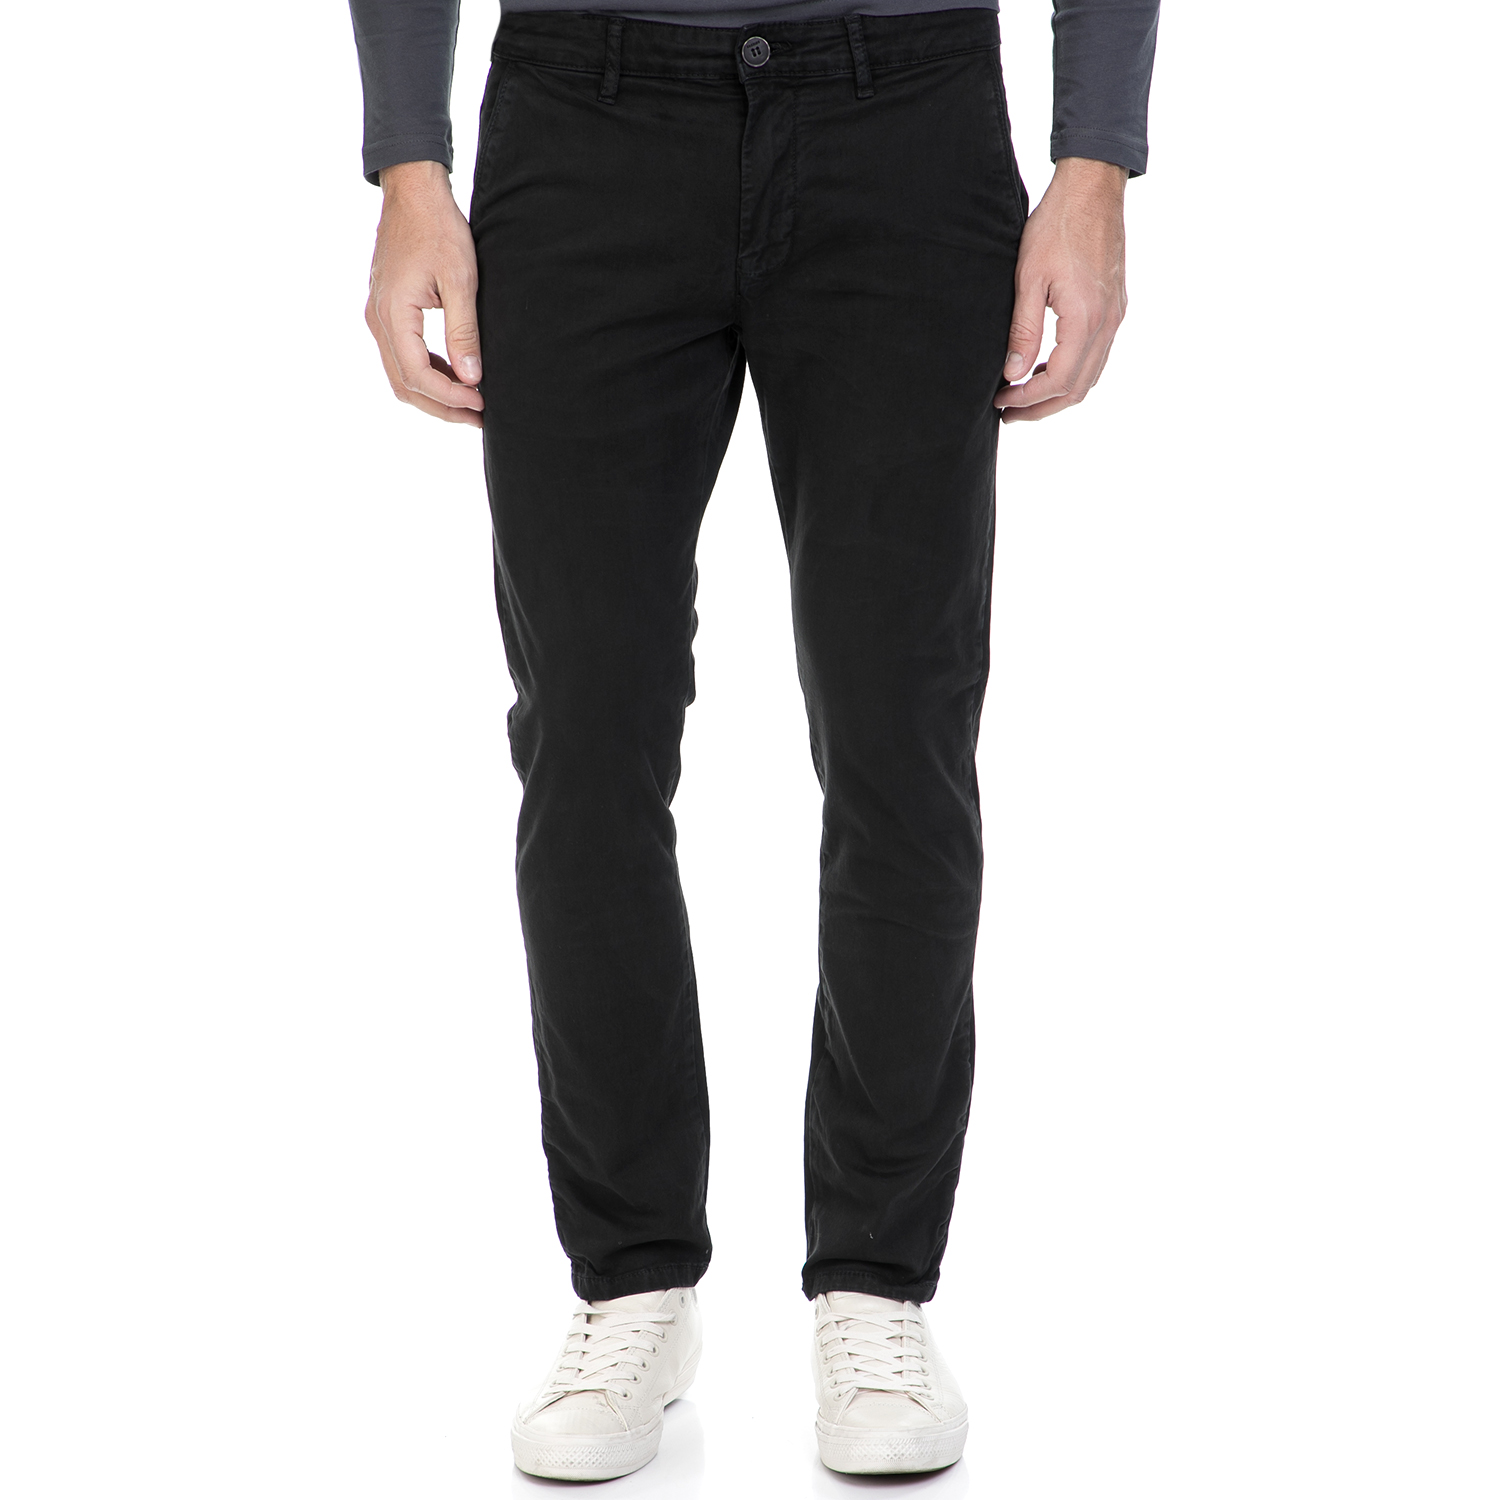 Ανδρικά/Ρούχα/Παντελόνια/Chinos SORBINO - Ανδρικό παντελόνι AMERICA SORBINO μαύρο